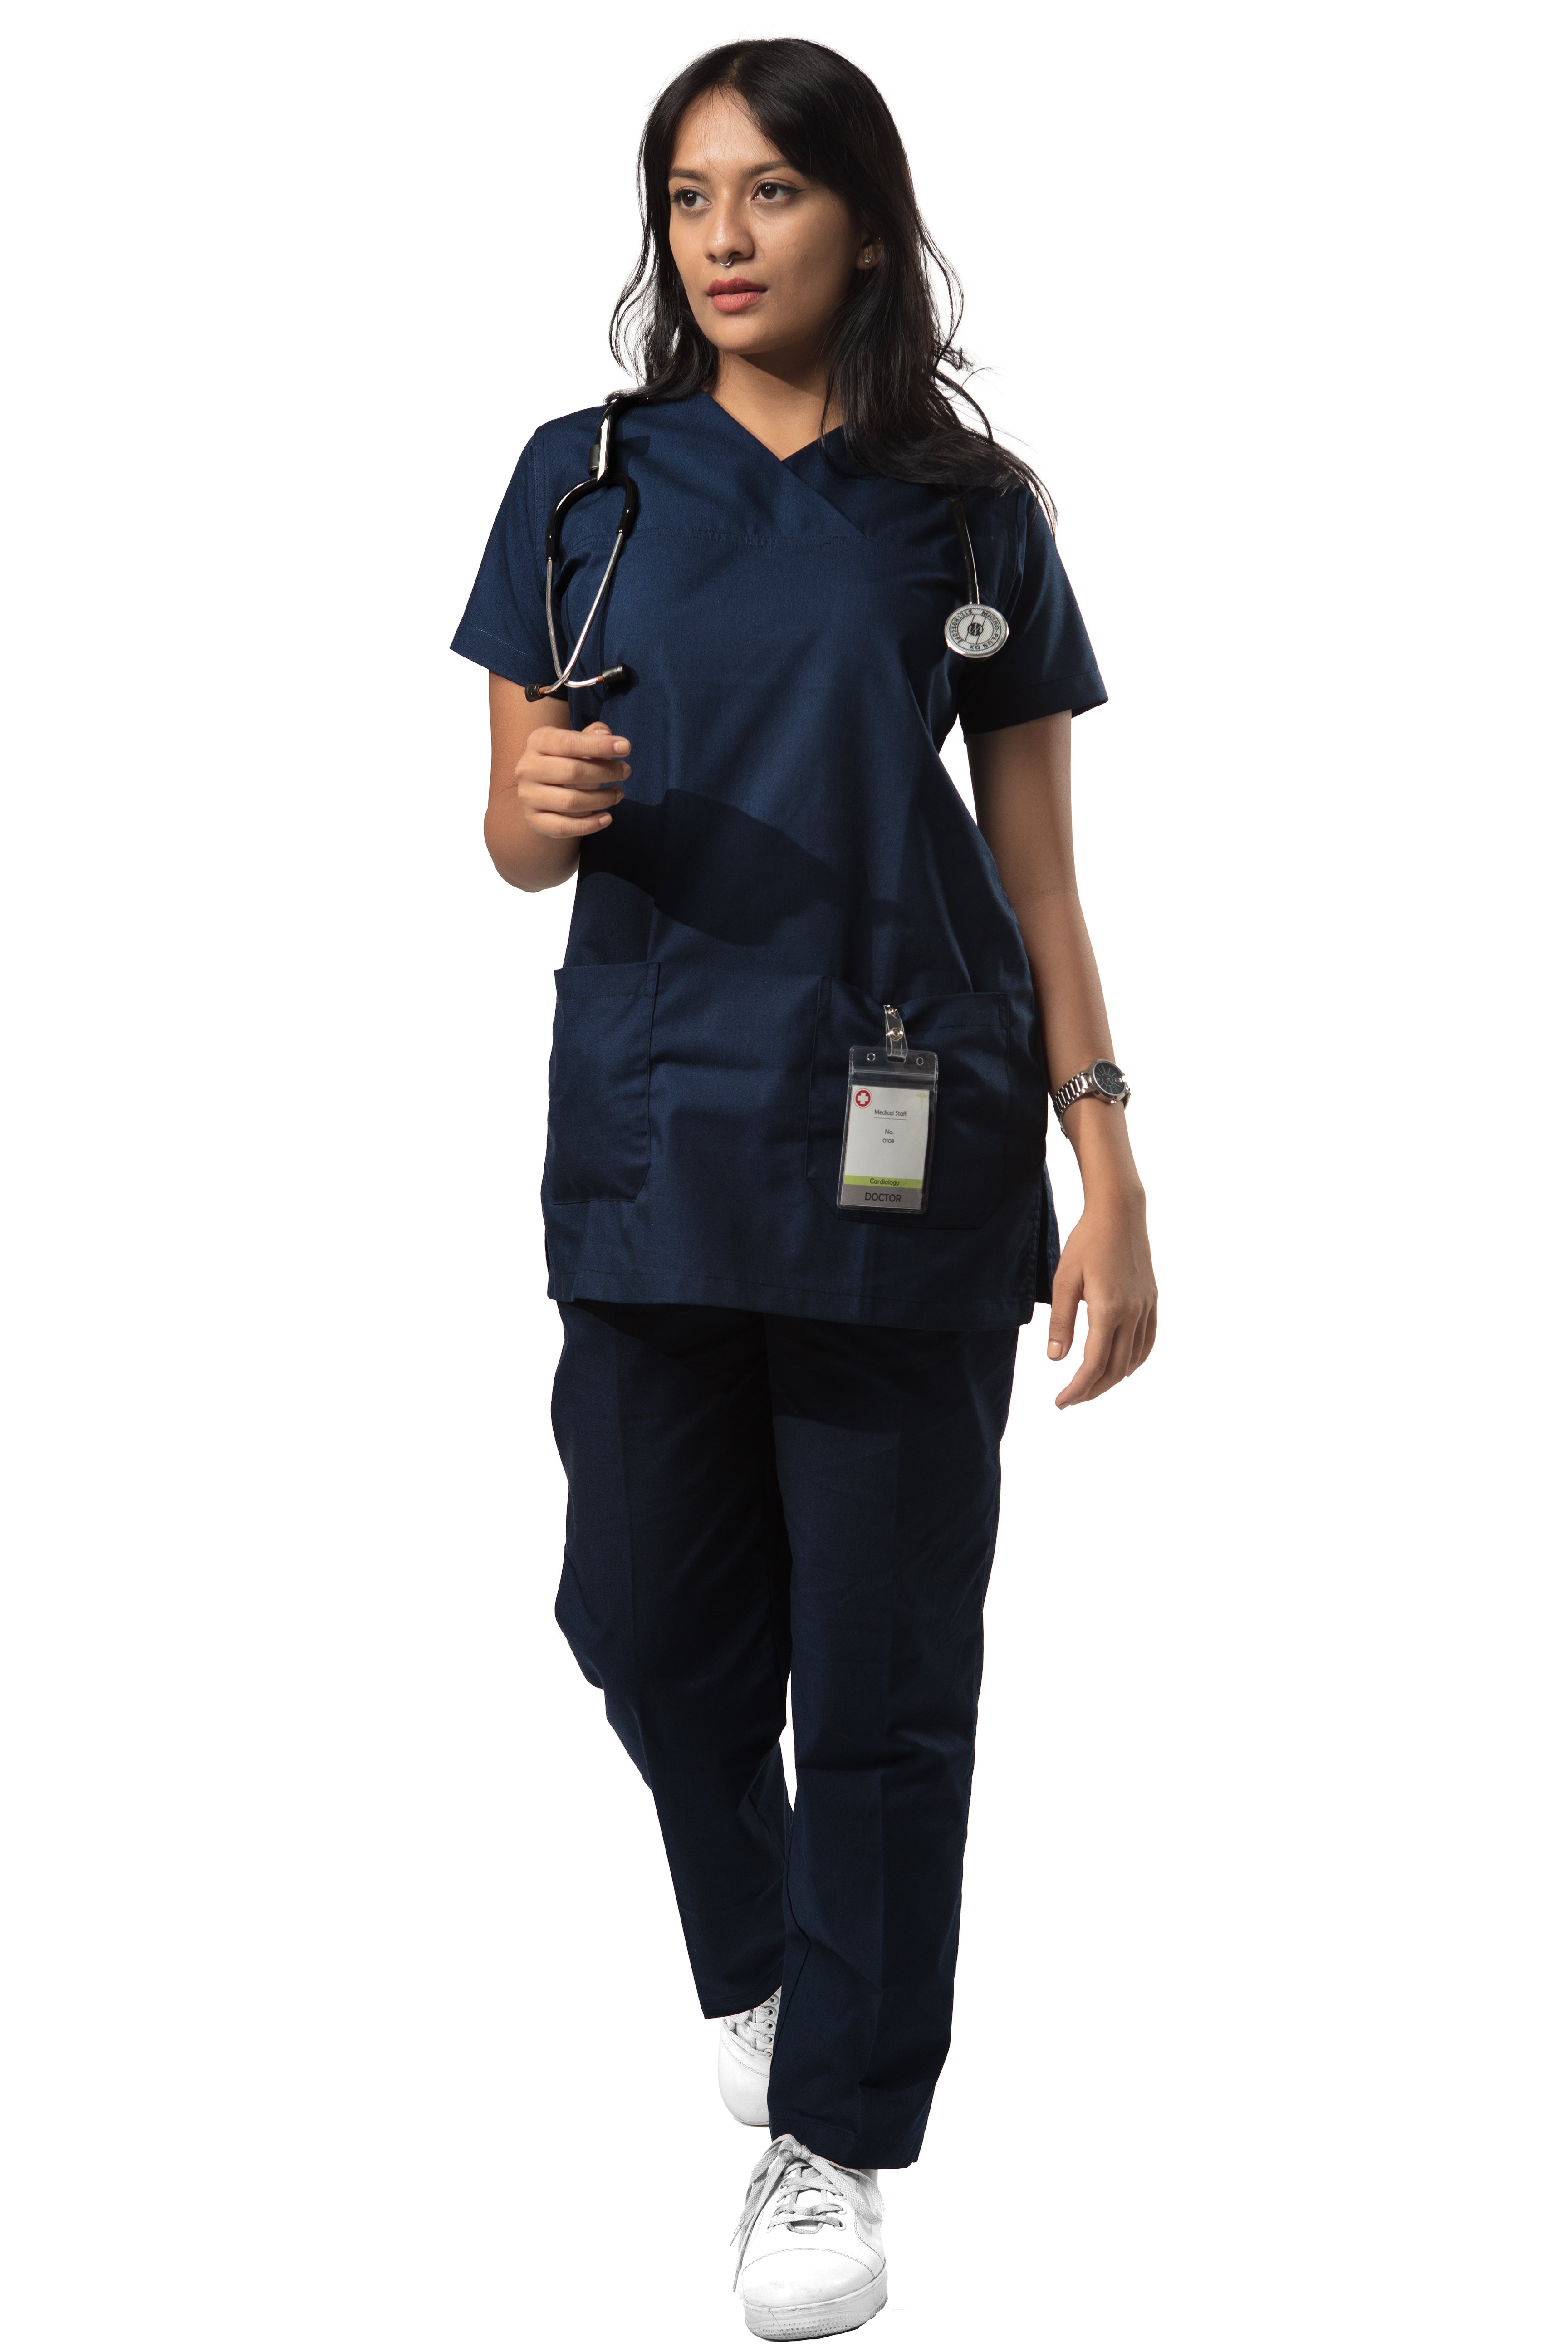 S FOR ME Scrubs, nurse uniforms, medical scrubs, scrubs for women – S-FOR-ME  Scrubs